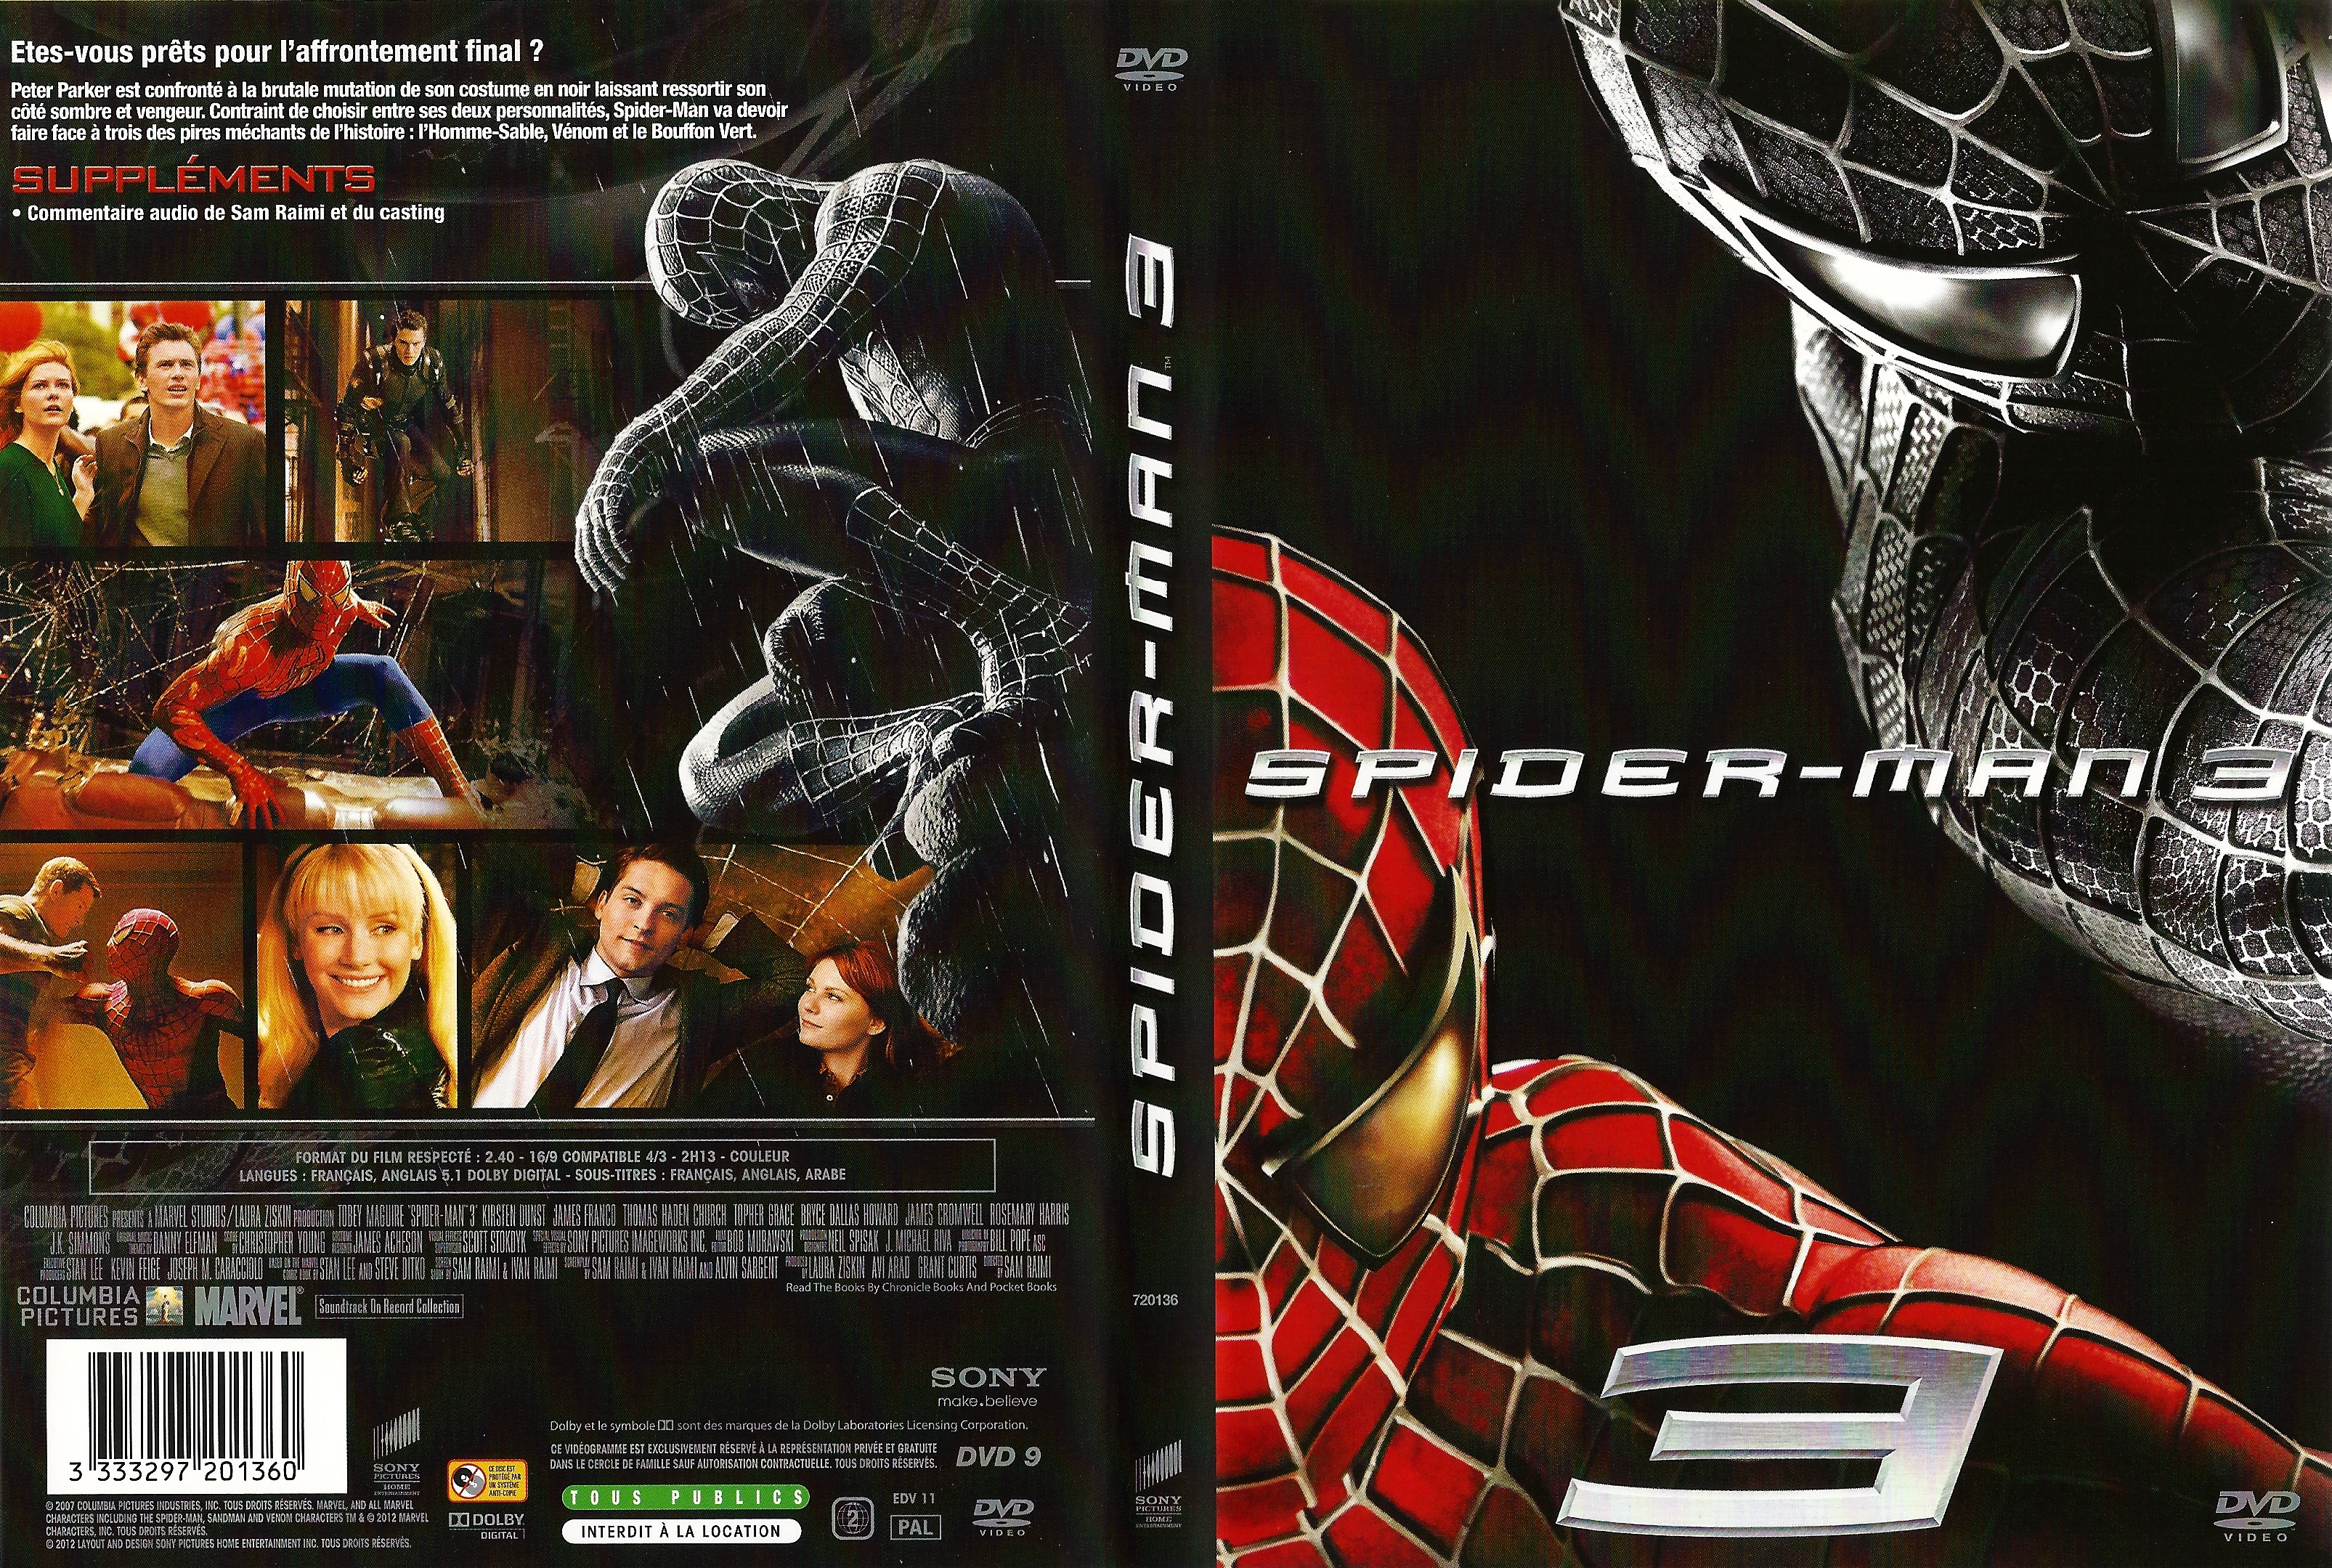 Jaquette DVD Spiderman 3 v5.